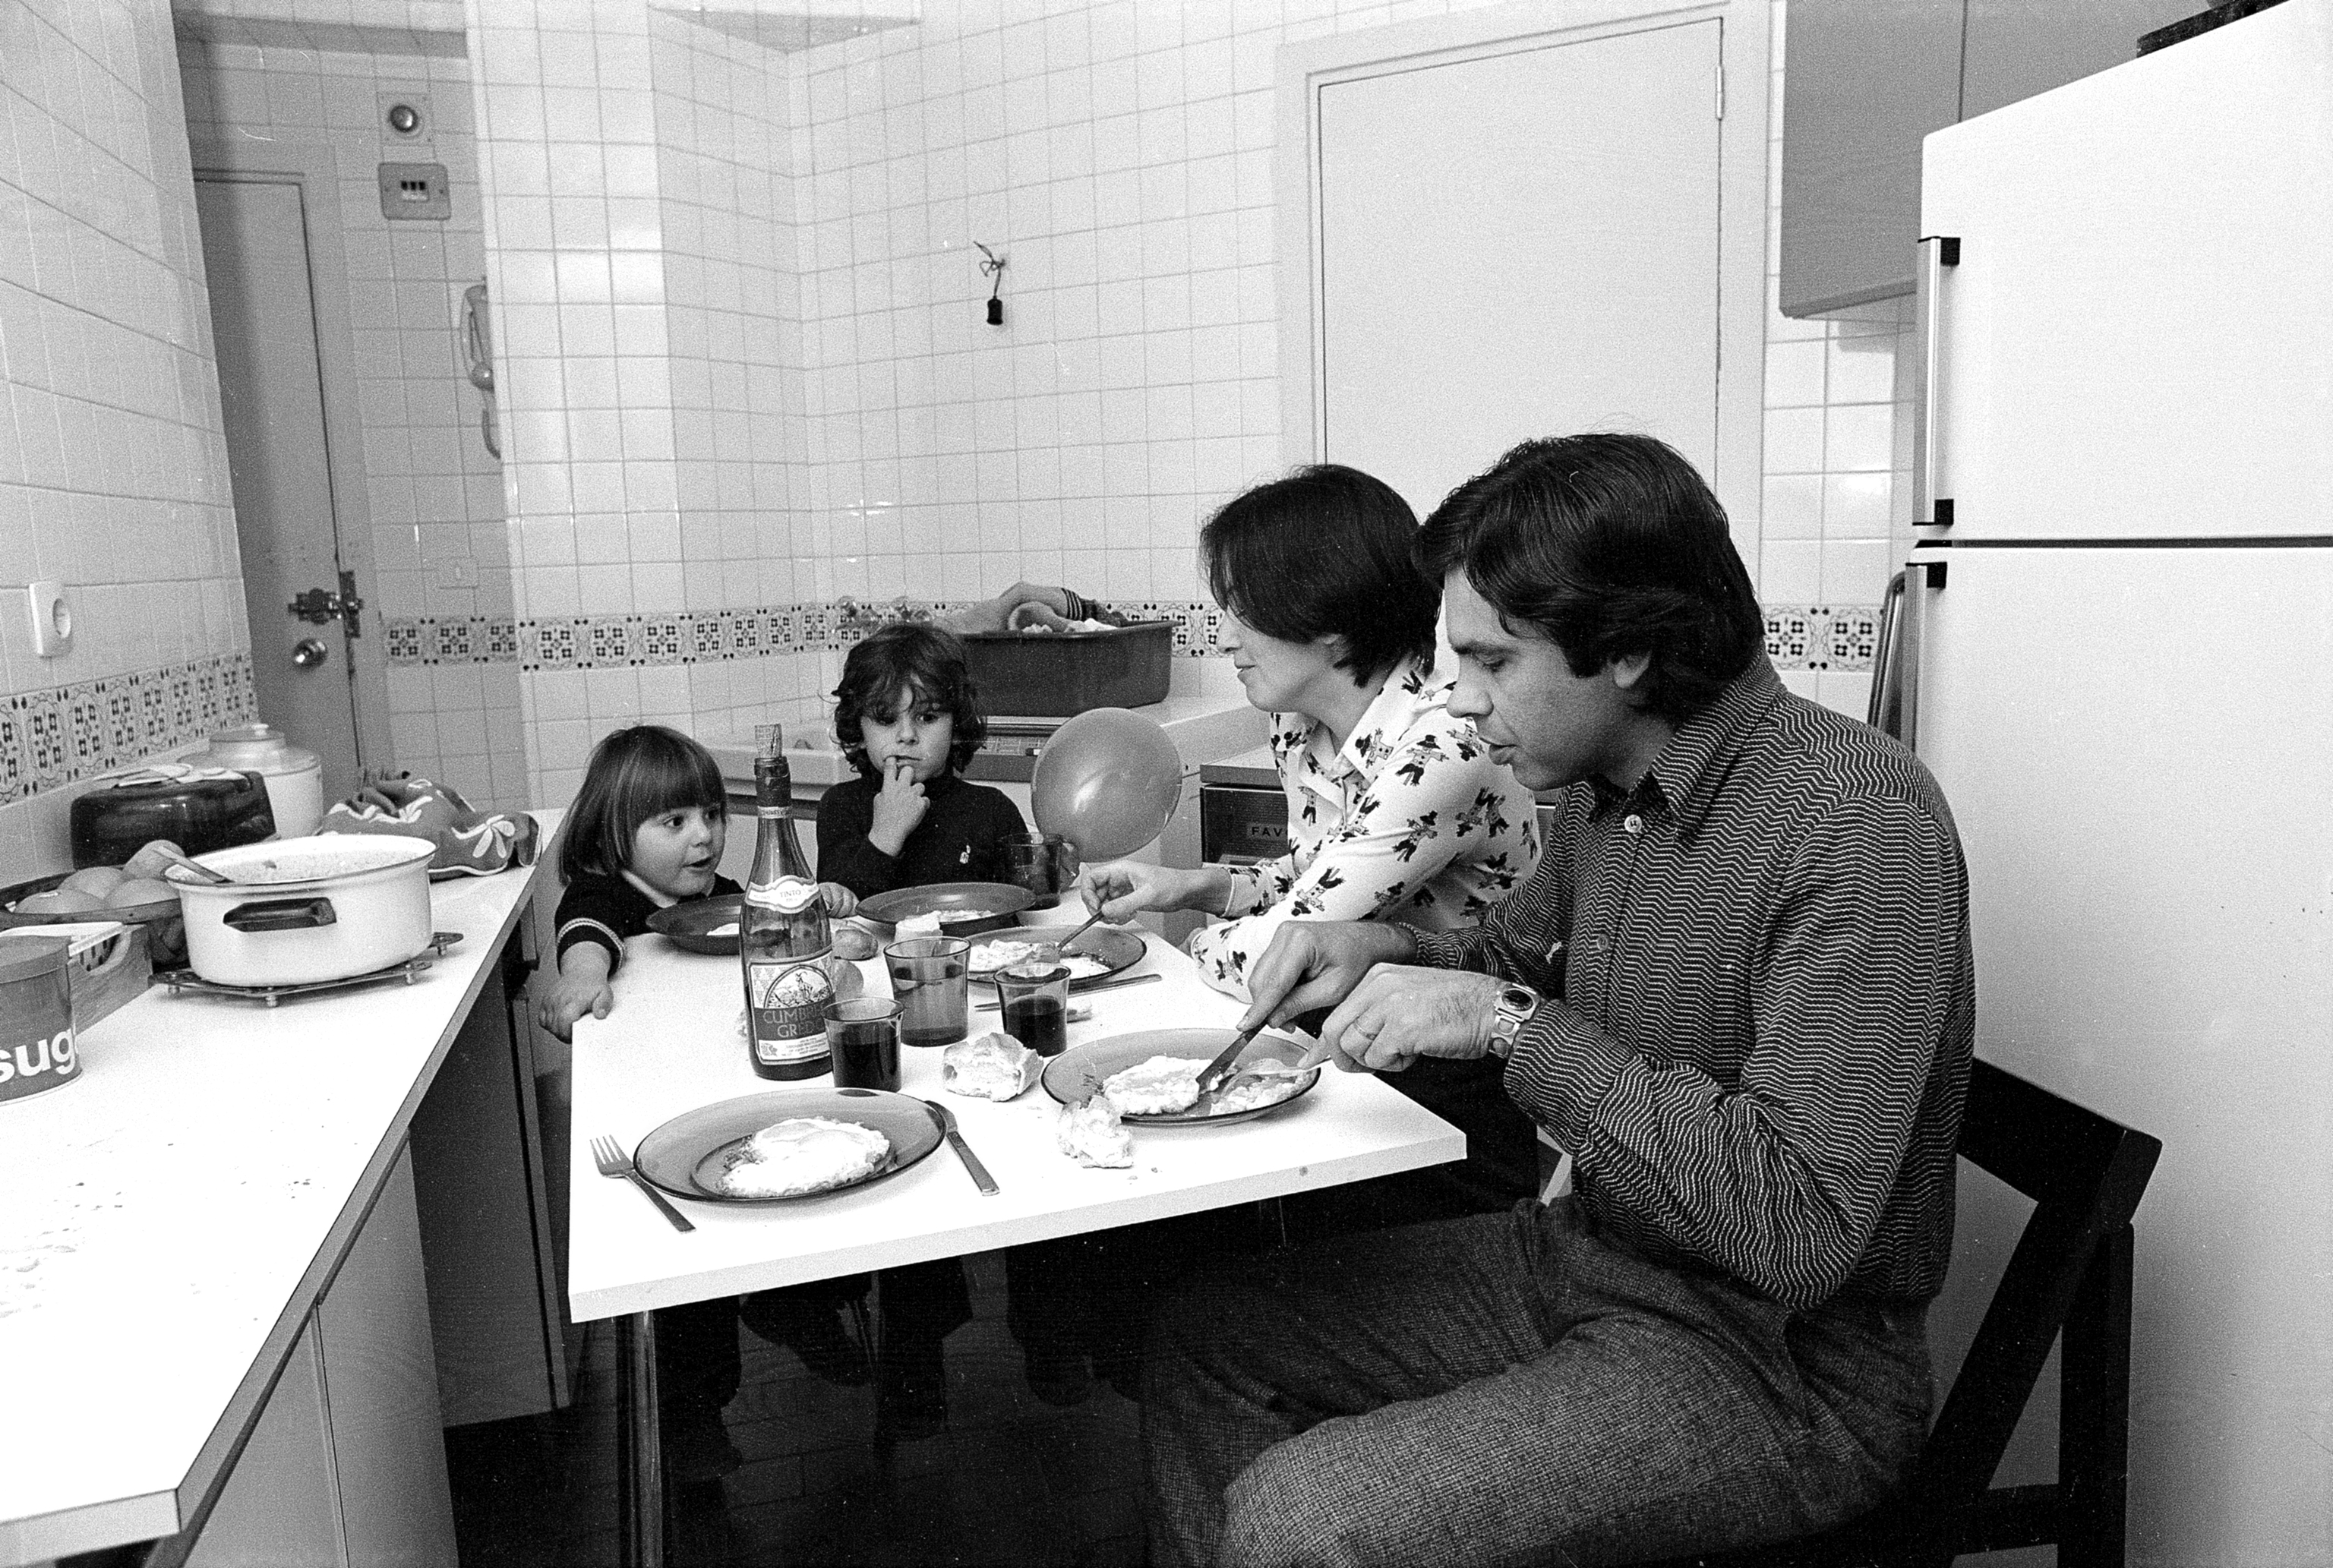 El matrimonio Gonzlez-Romero, en la cocina de su casa de la madrilea calle Pez Volador, antes de la victoria del PSOE.